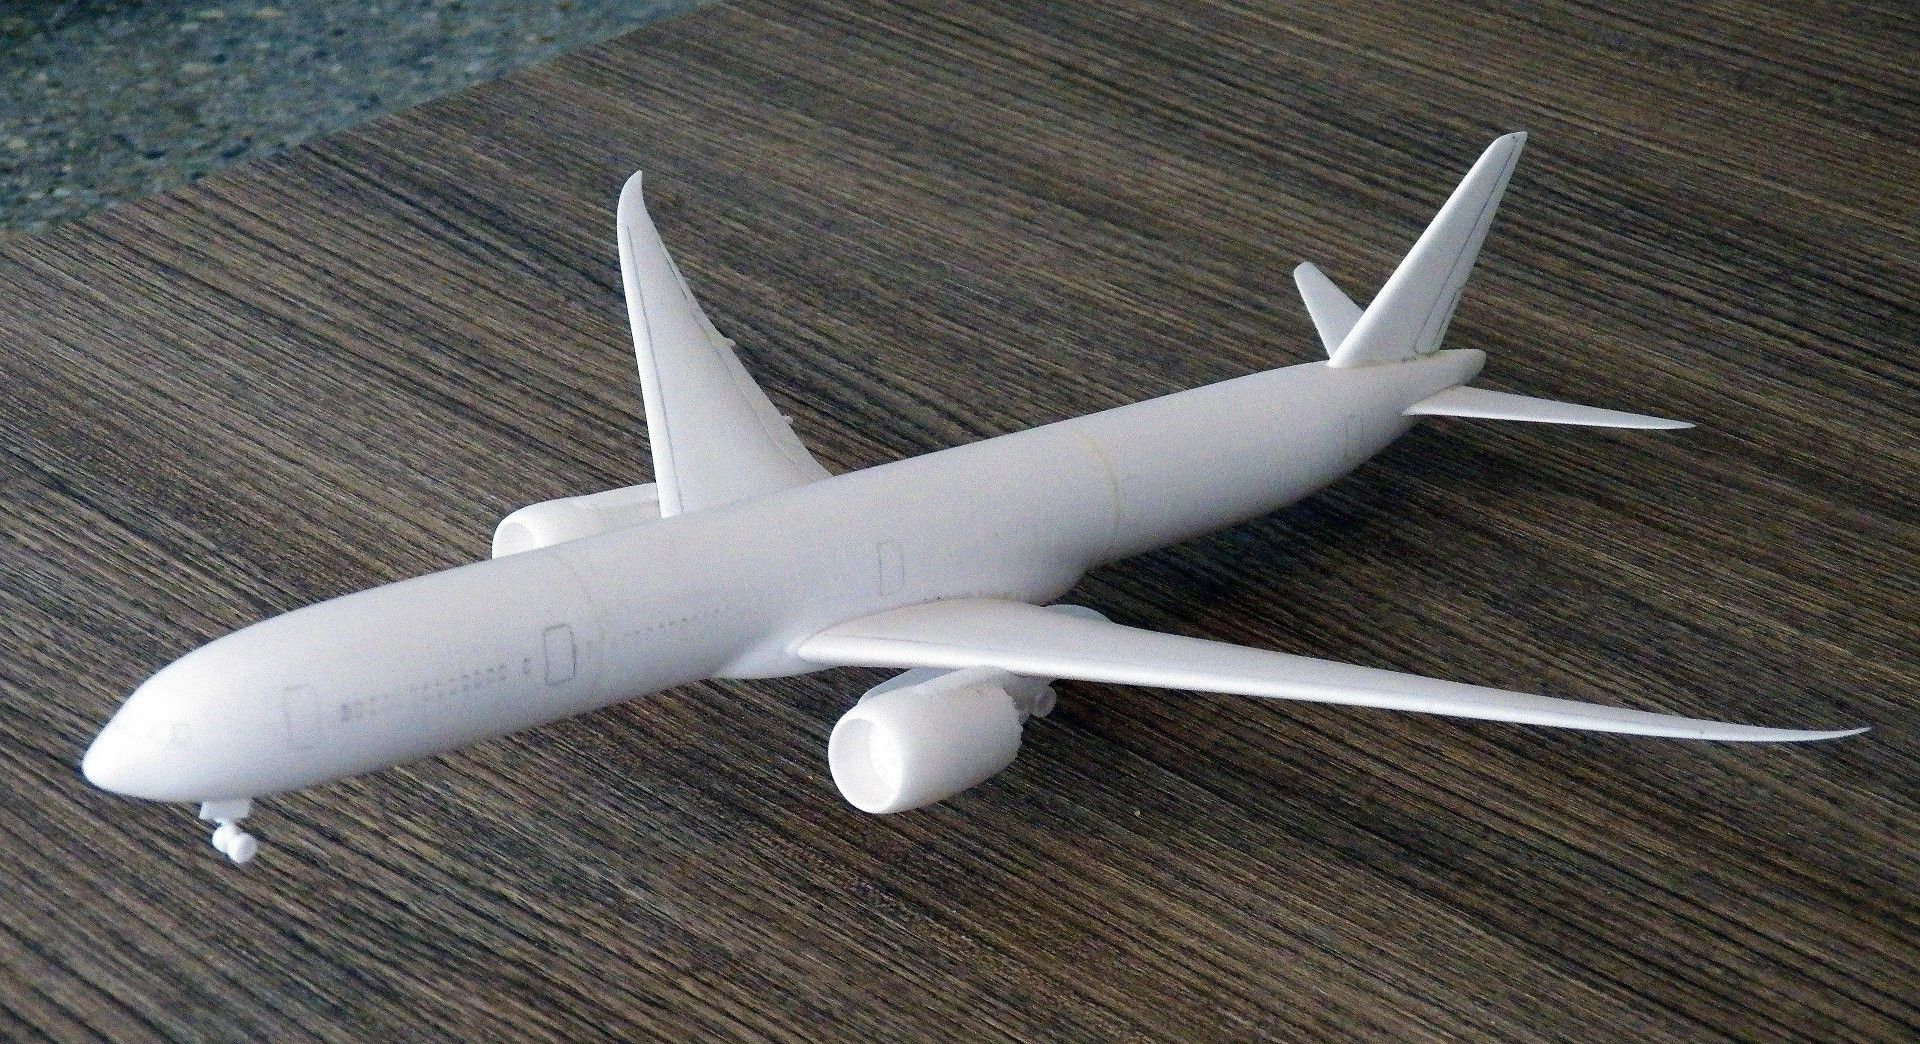 100_0081 (Large).jpg Télécharger fichier STL Modèle réduit d'avion Boeing 777X • Modèle imprimable en 3D, guaro3d